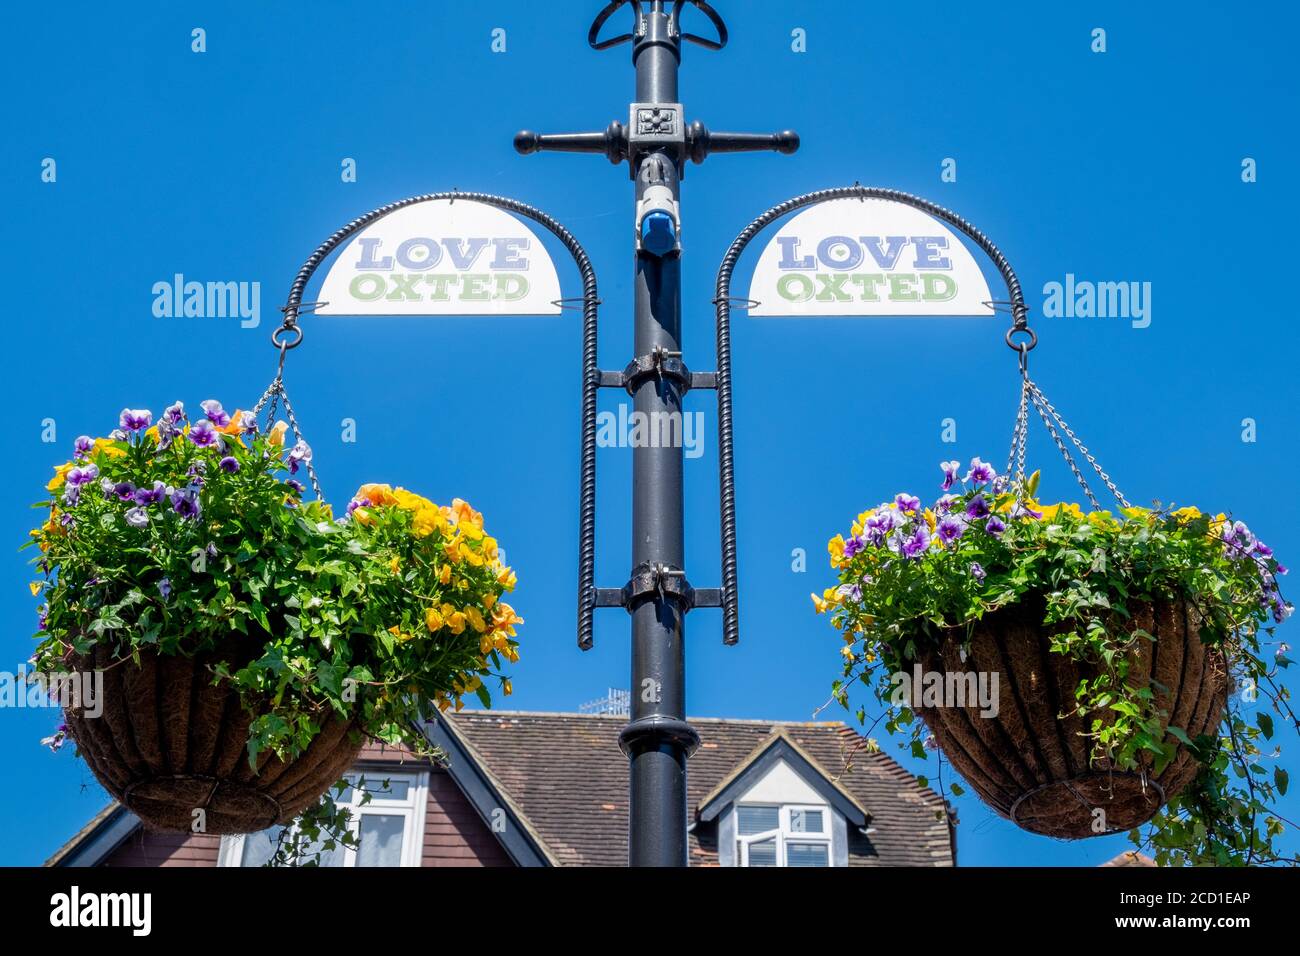 Love jardinières de fleur pendues d'un lampost, Oxted, Surrey, Angleterre, GB Banque D'Images